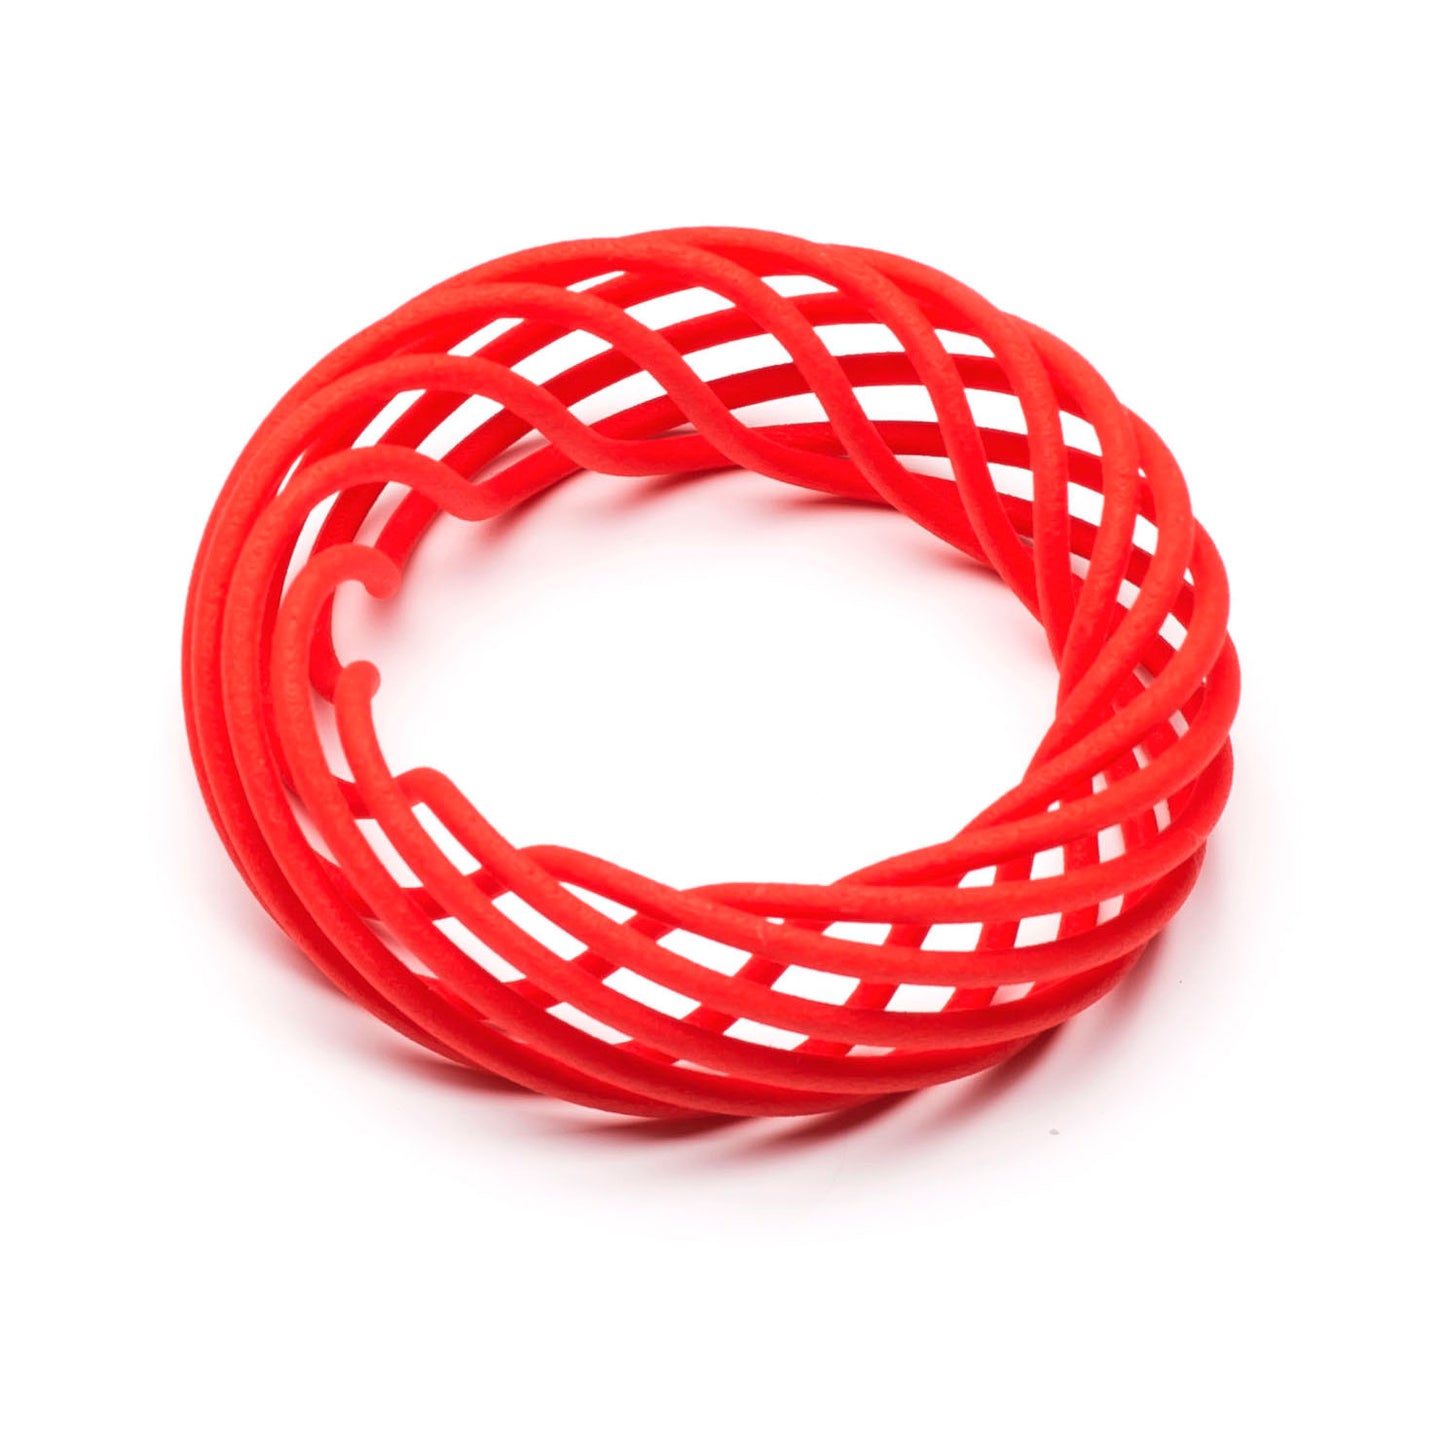 Vortex 3D printed nylon bangle in scarlet